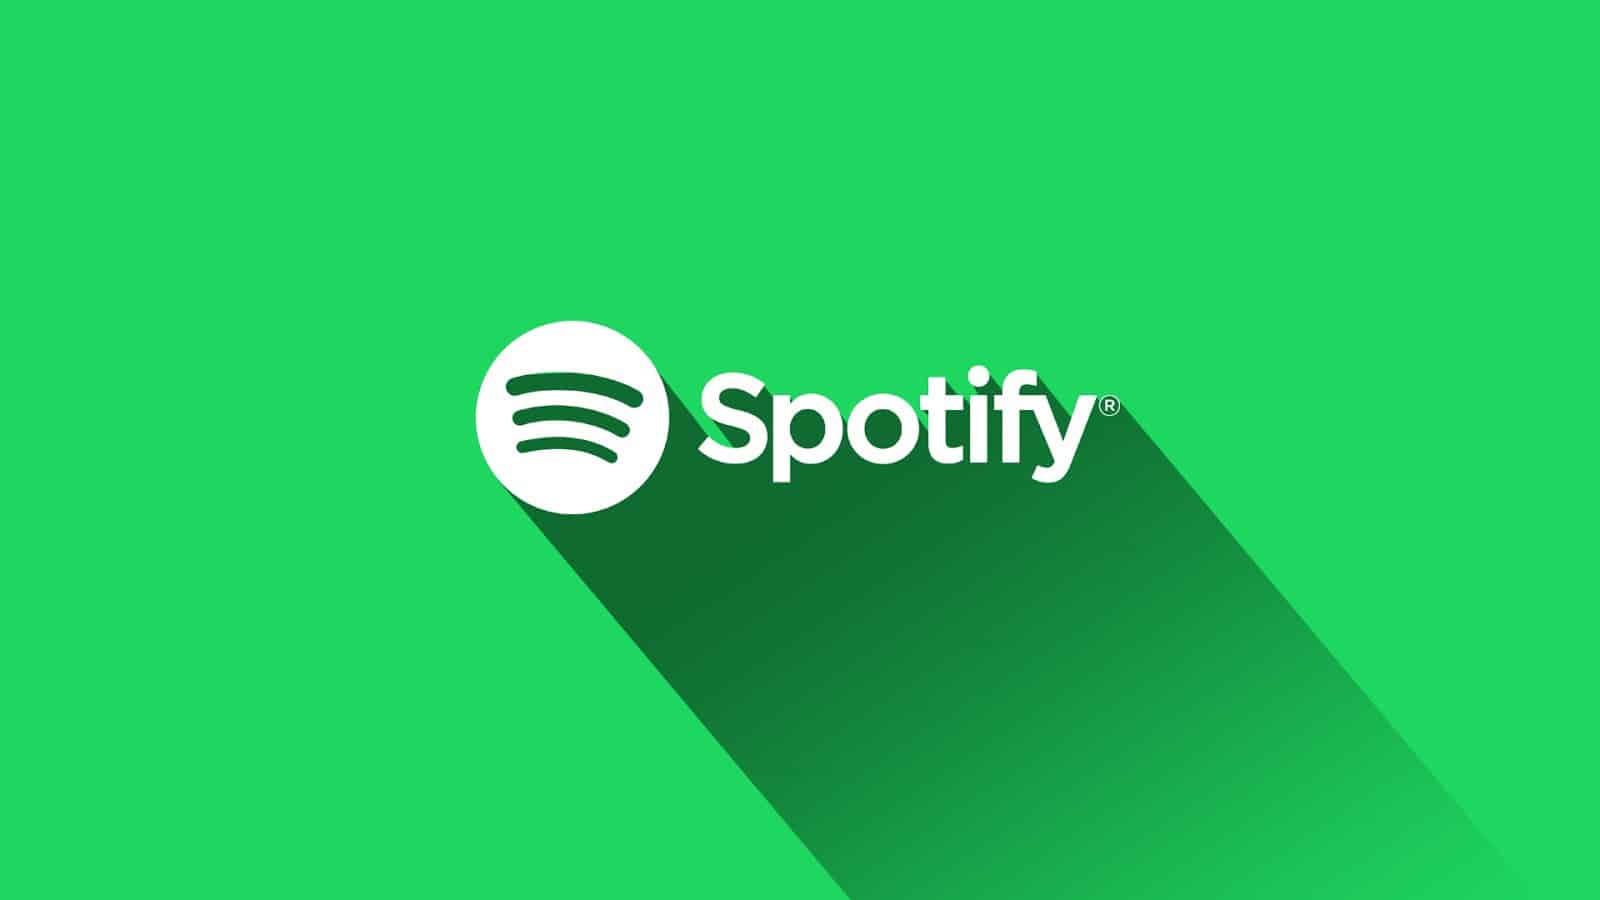 Le logo de Spotify sur un fond vert.